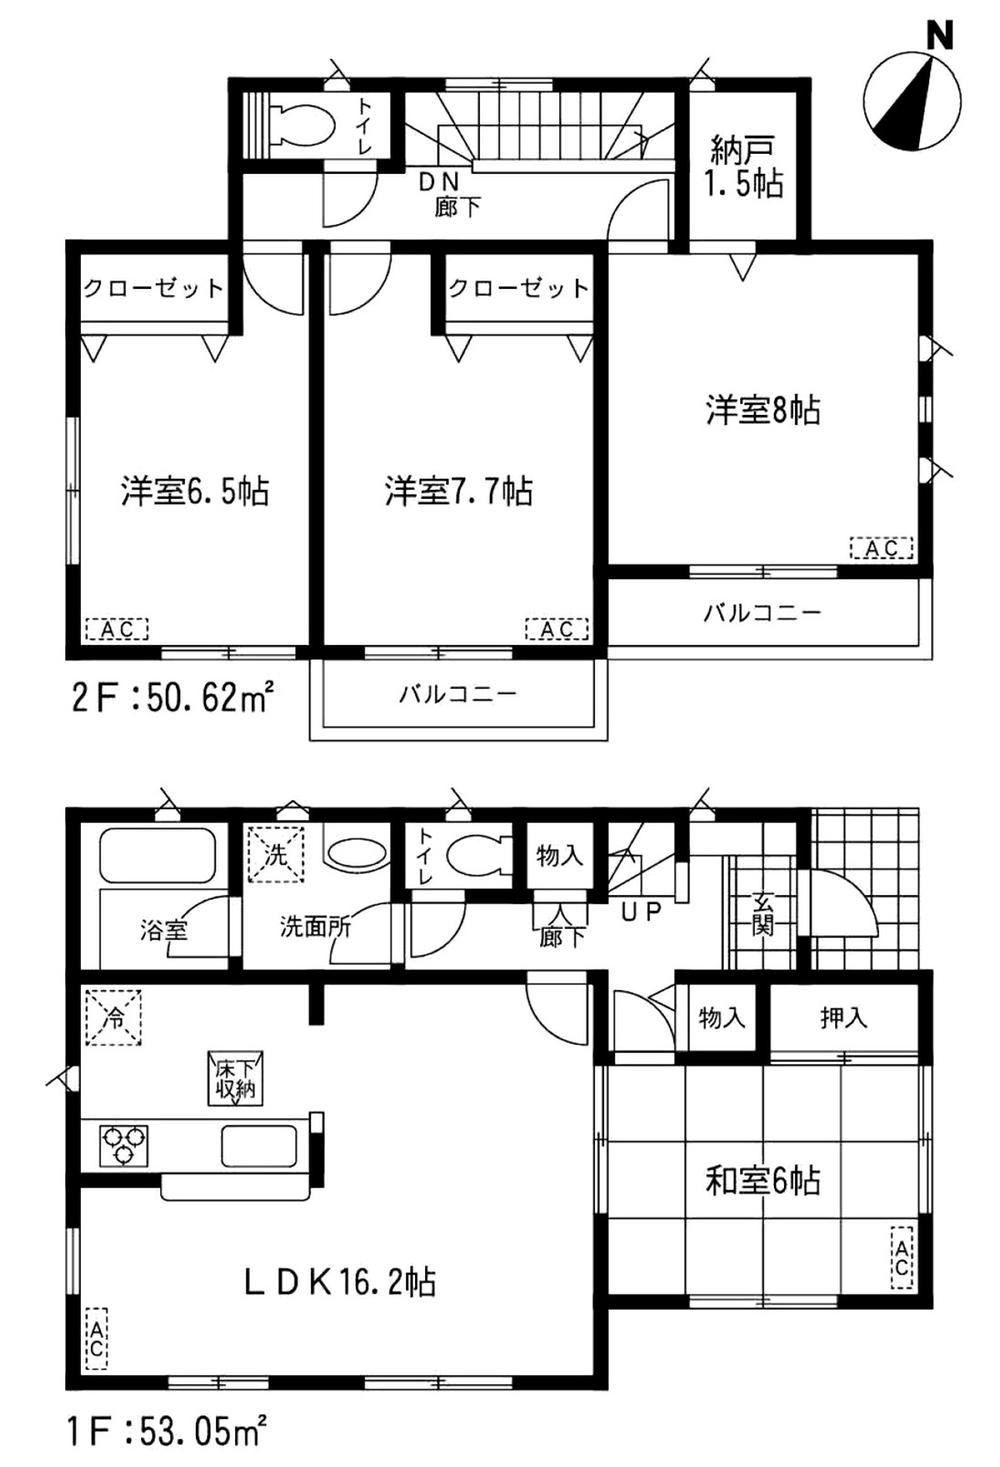 Floor plan. 19,800,000 yen, 4LDK + S (storeroom), Land area 260.74 sq m , Building area 103.67 sq m